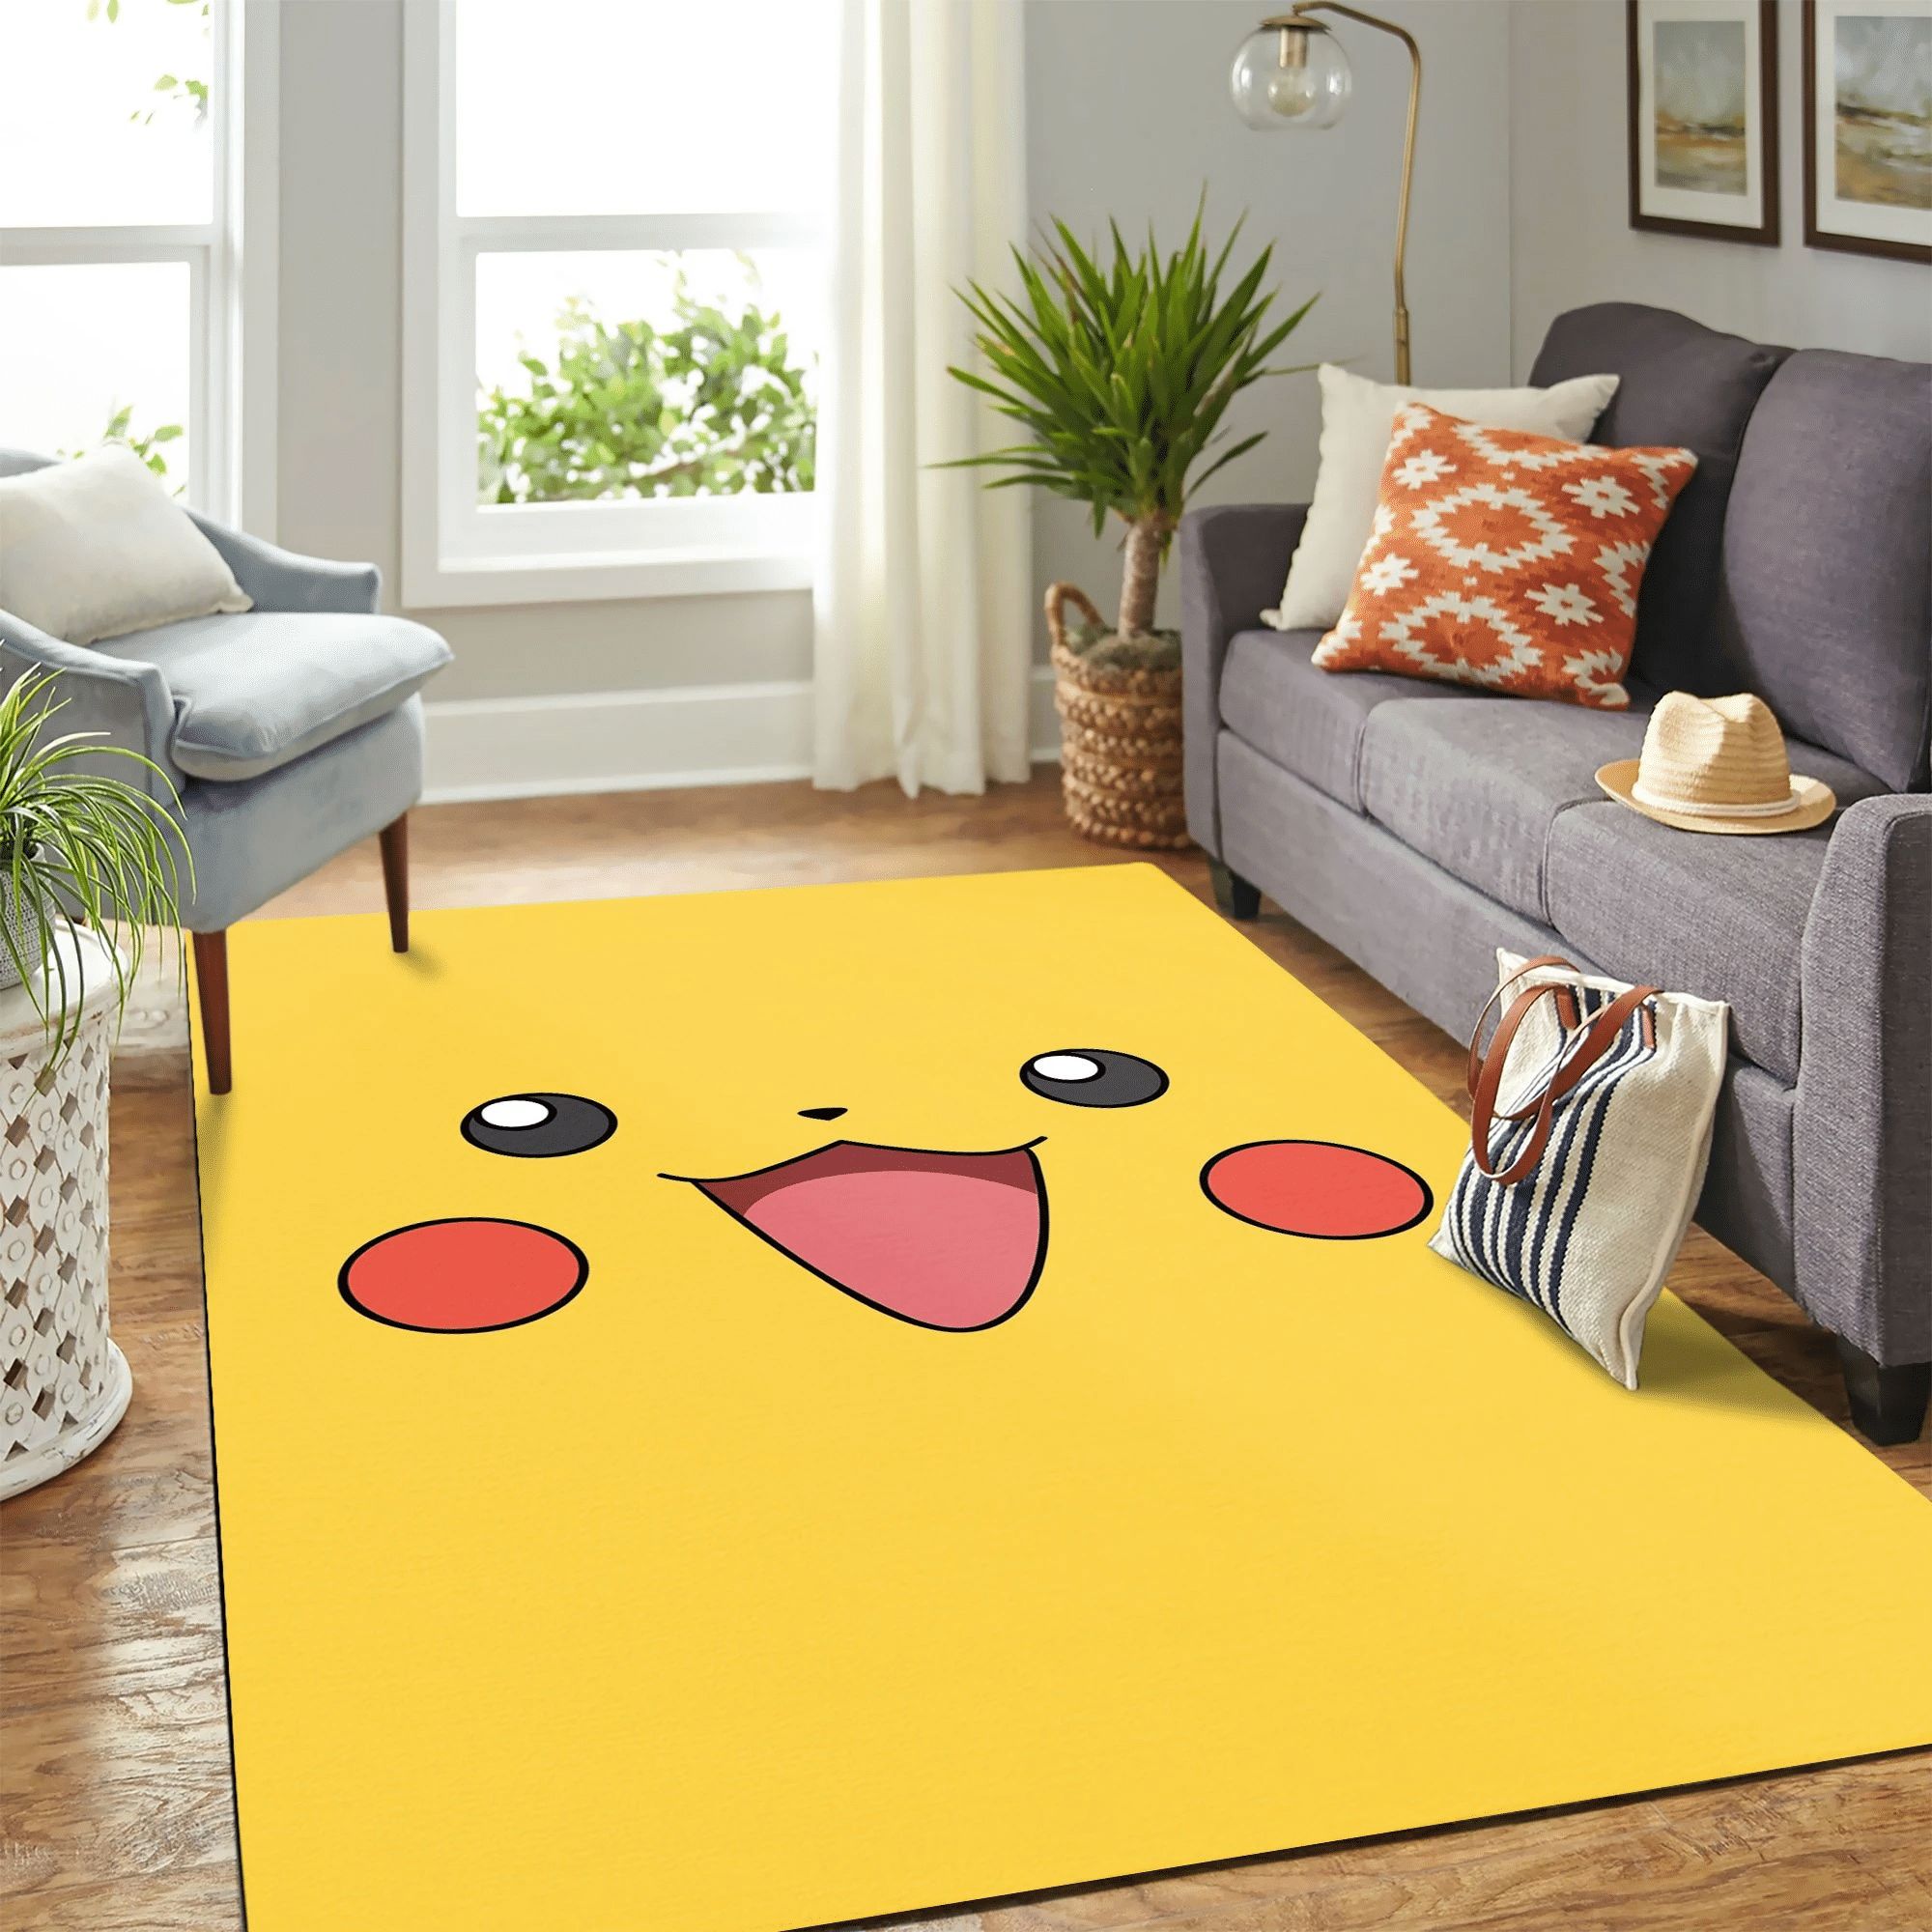 Pikachu Carpet Floor Area Rug Chrismas Gift – Indoor Outdoor Rugs